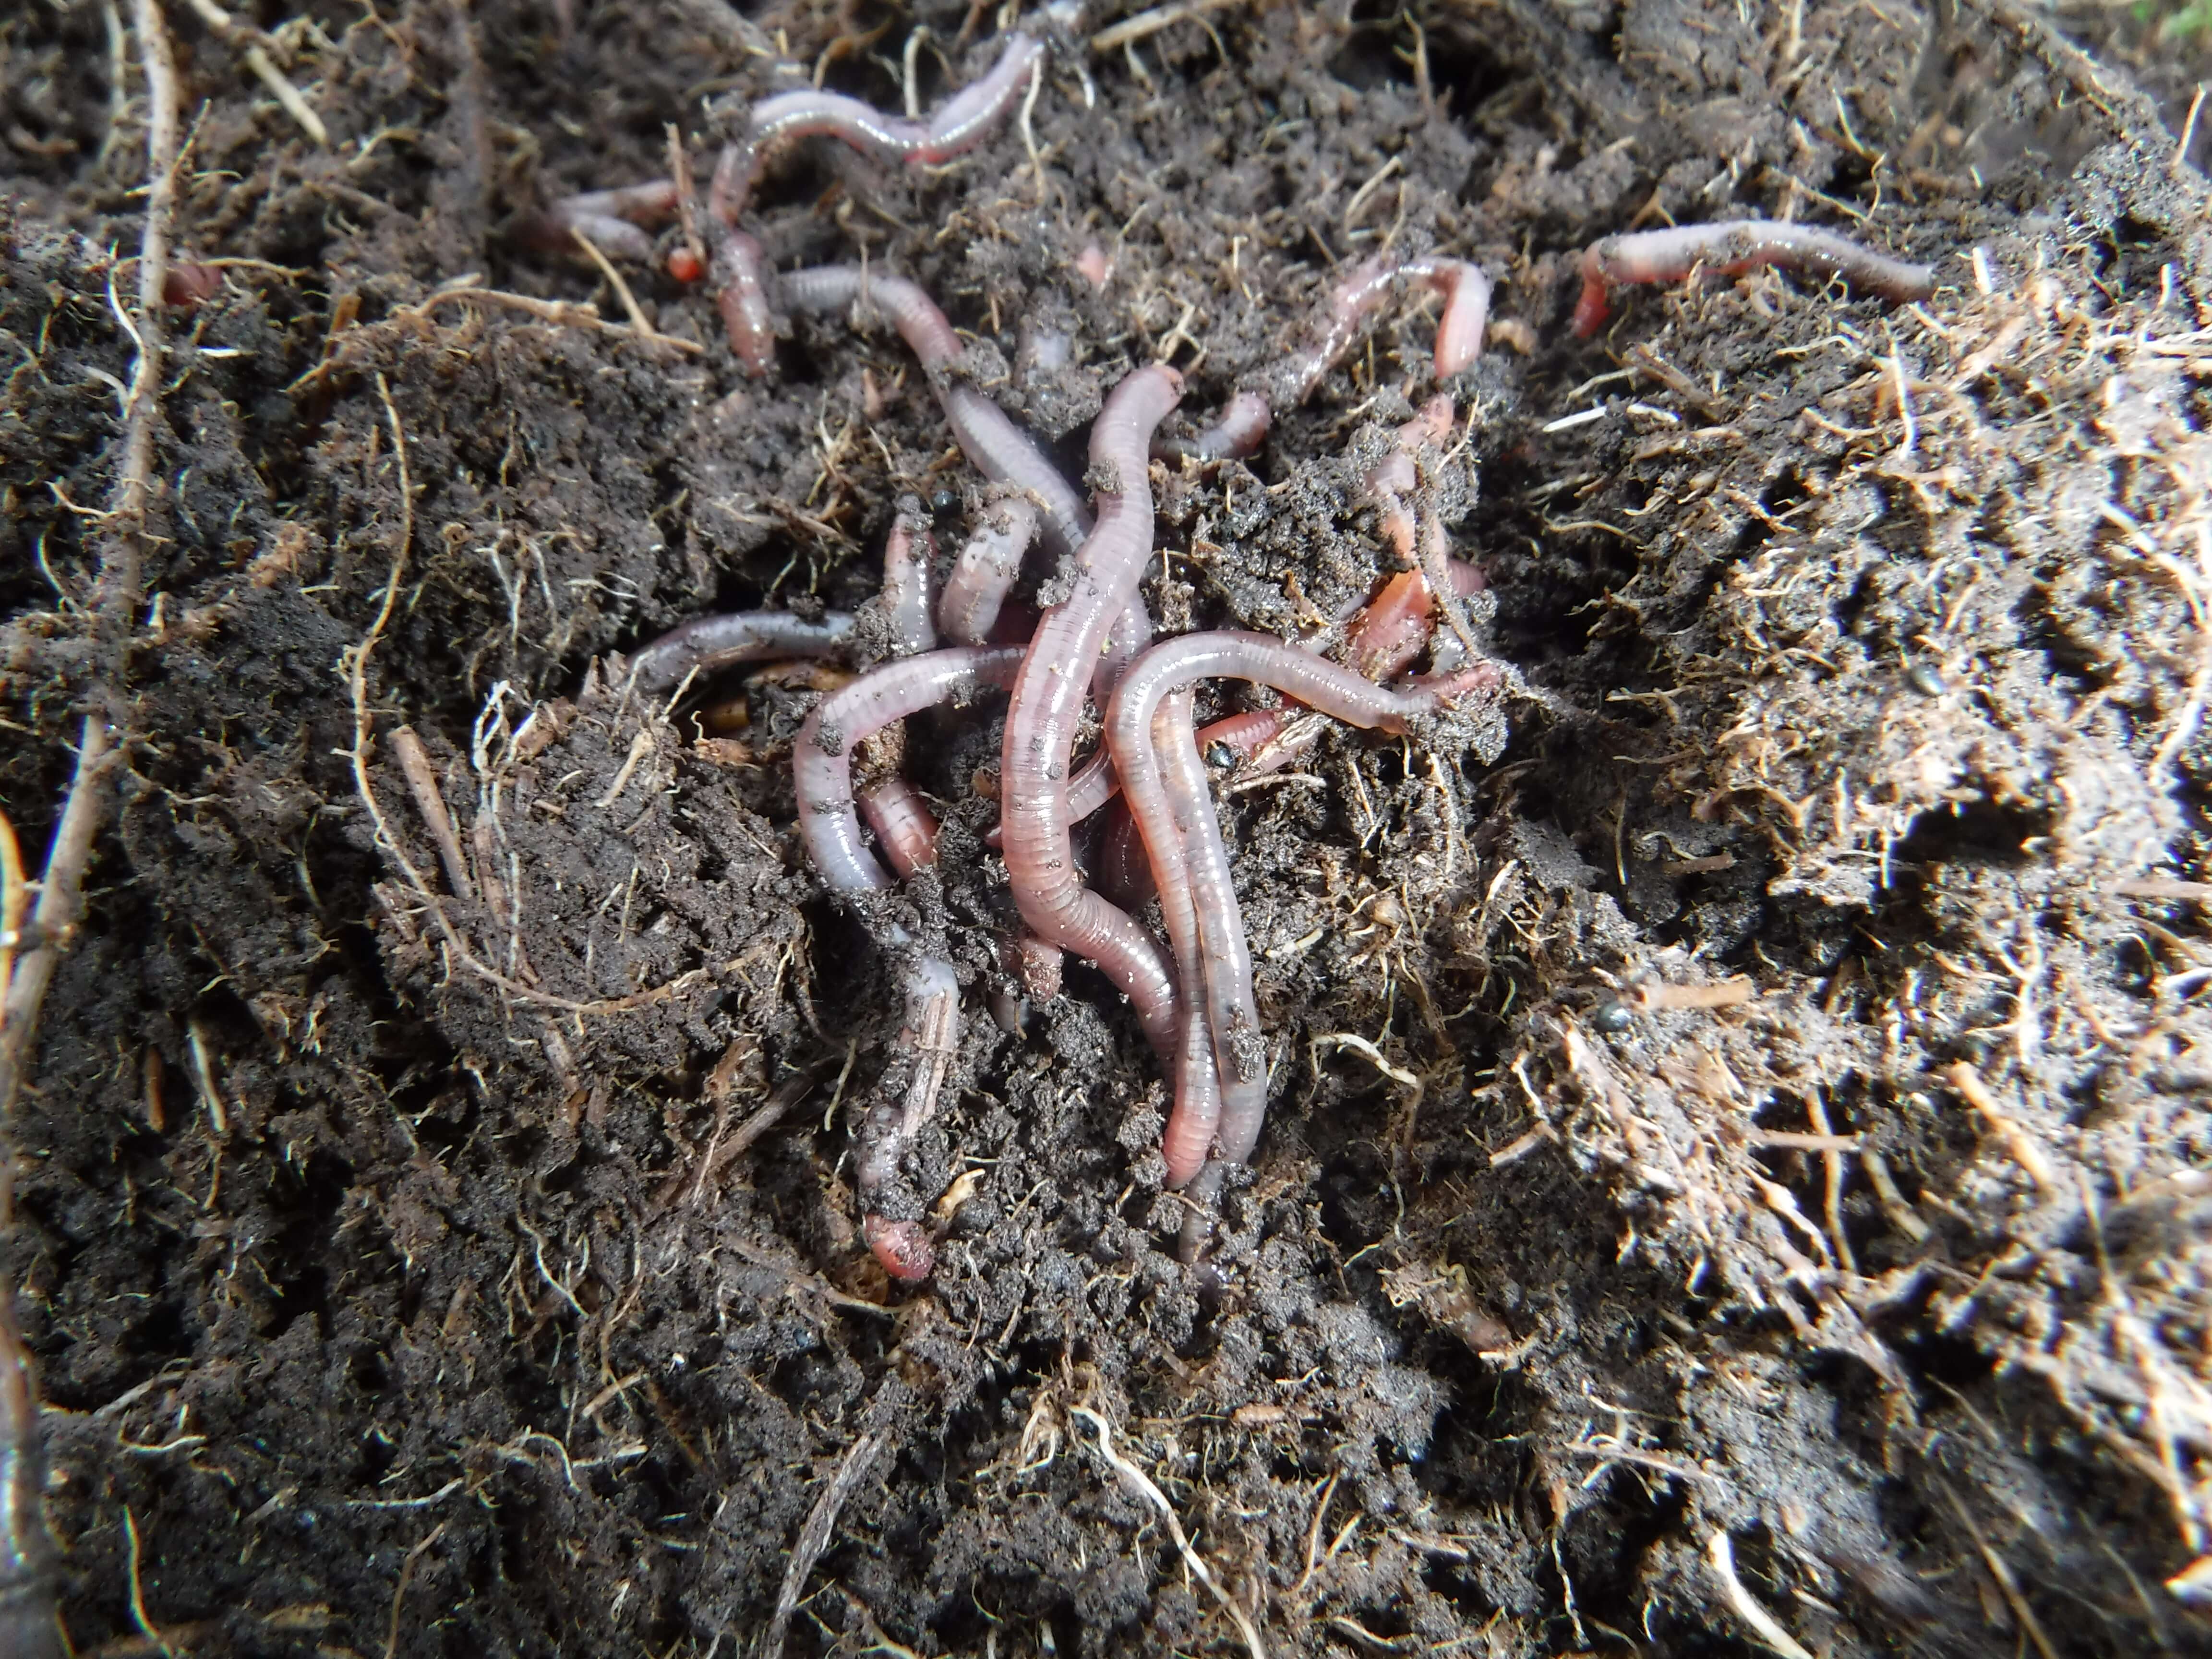 Earthworms_NorthRoe.jpg